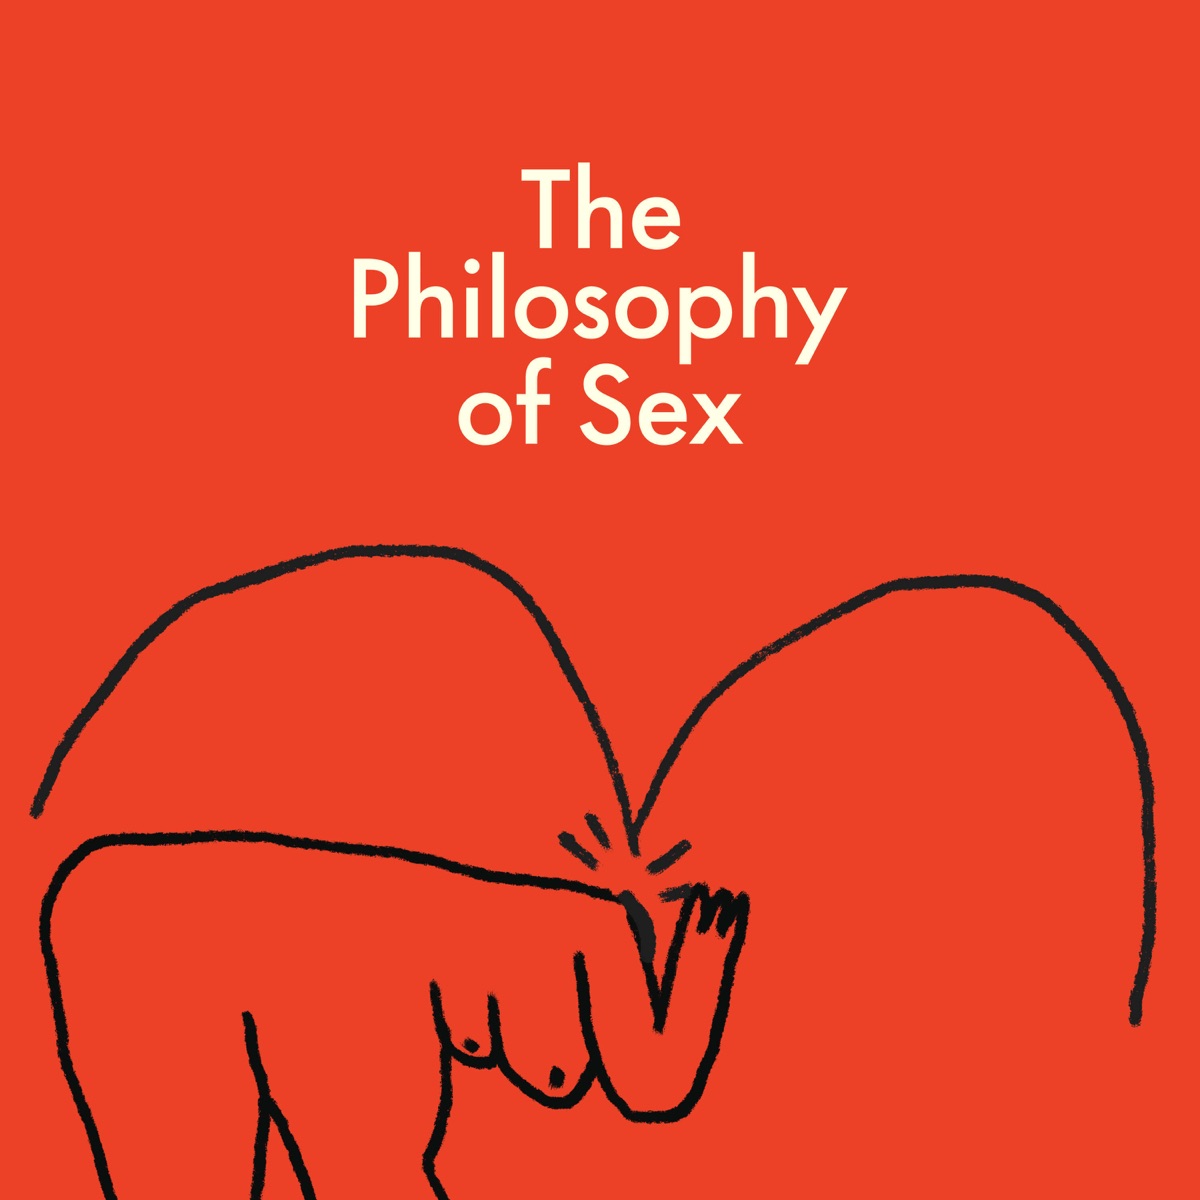 The Philosophy of Sex â€“ Podcast â€“ Podtail